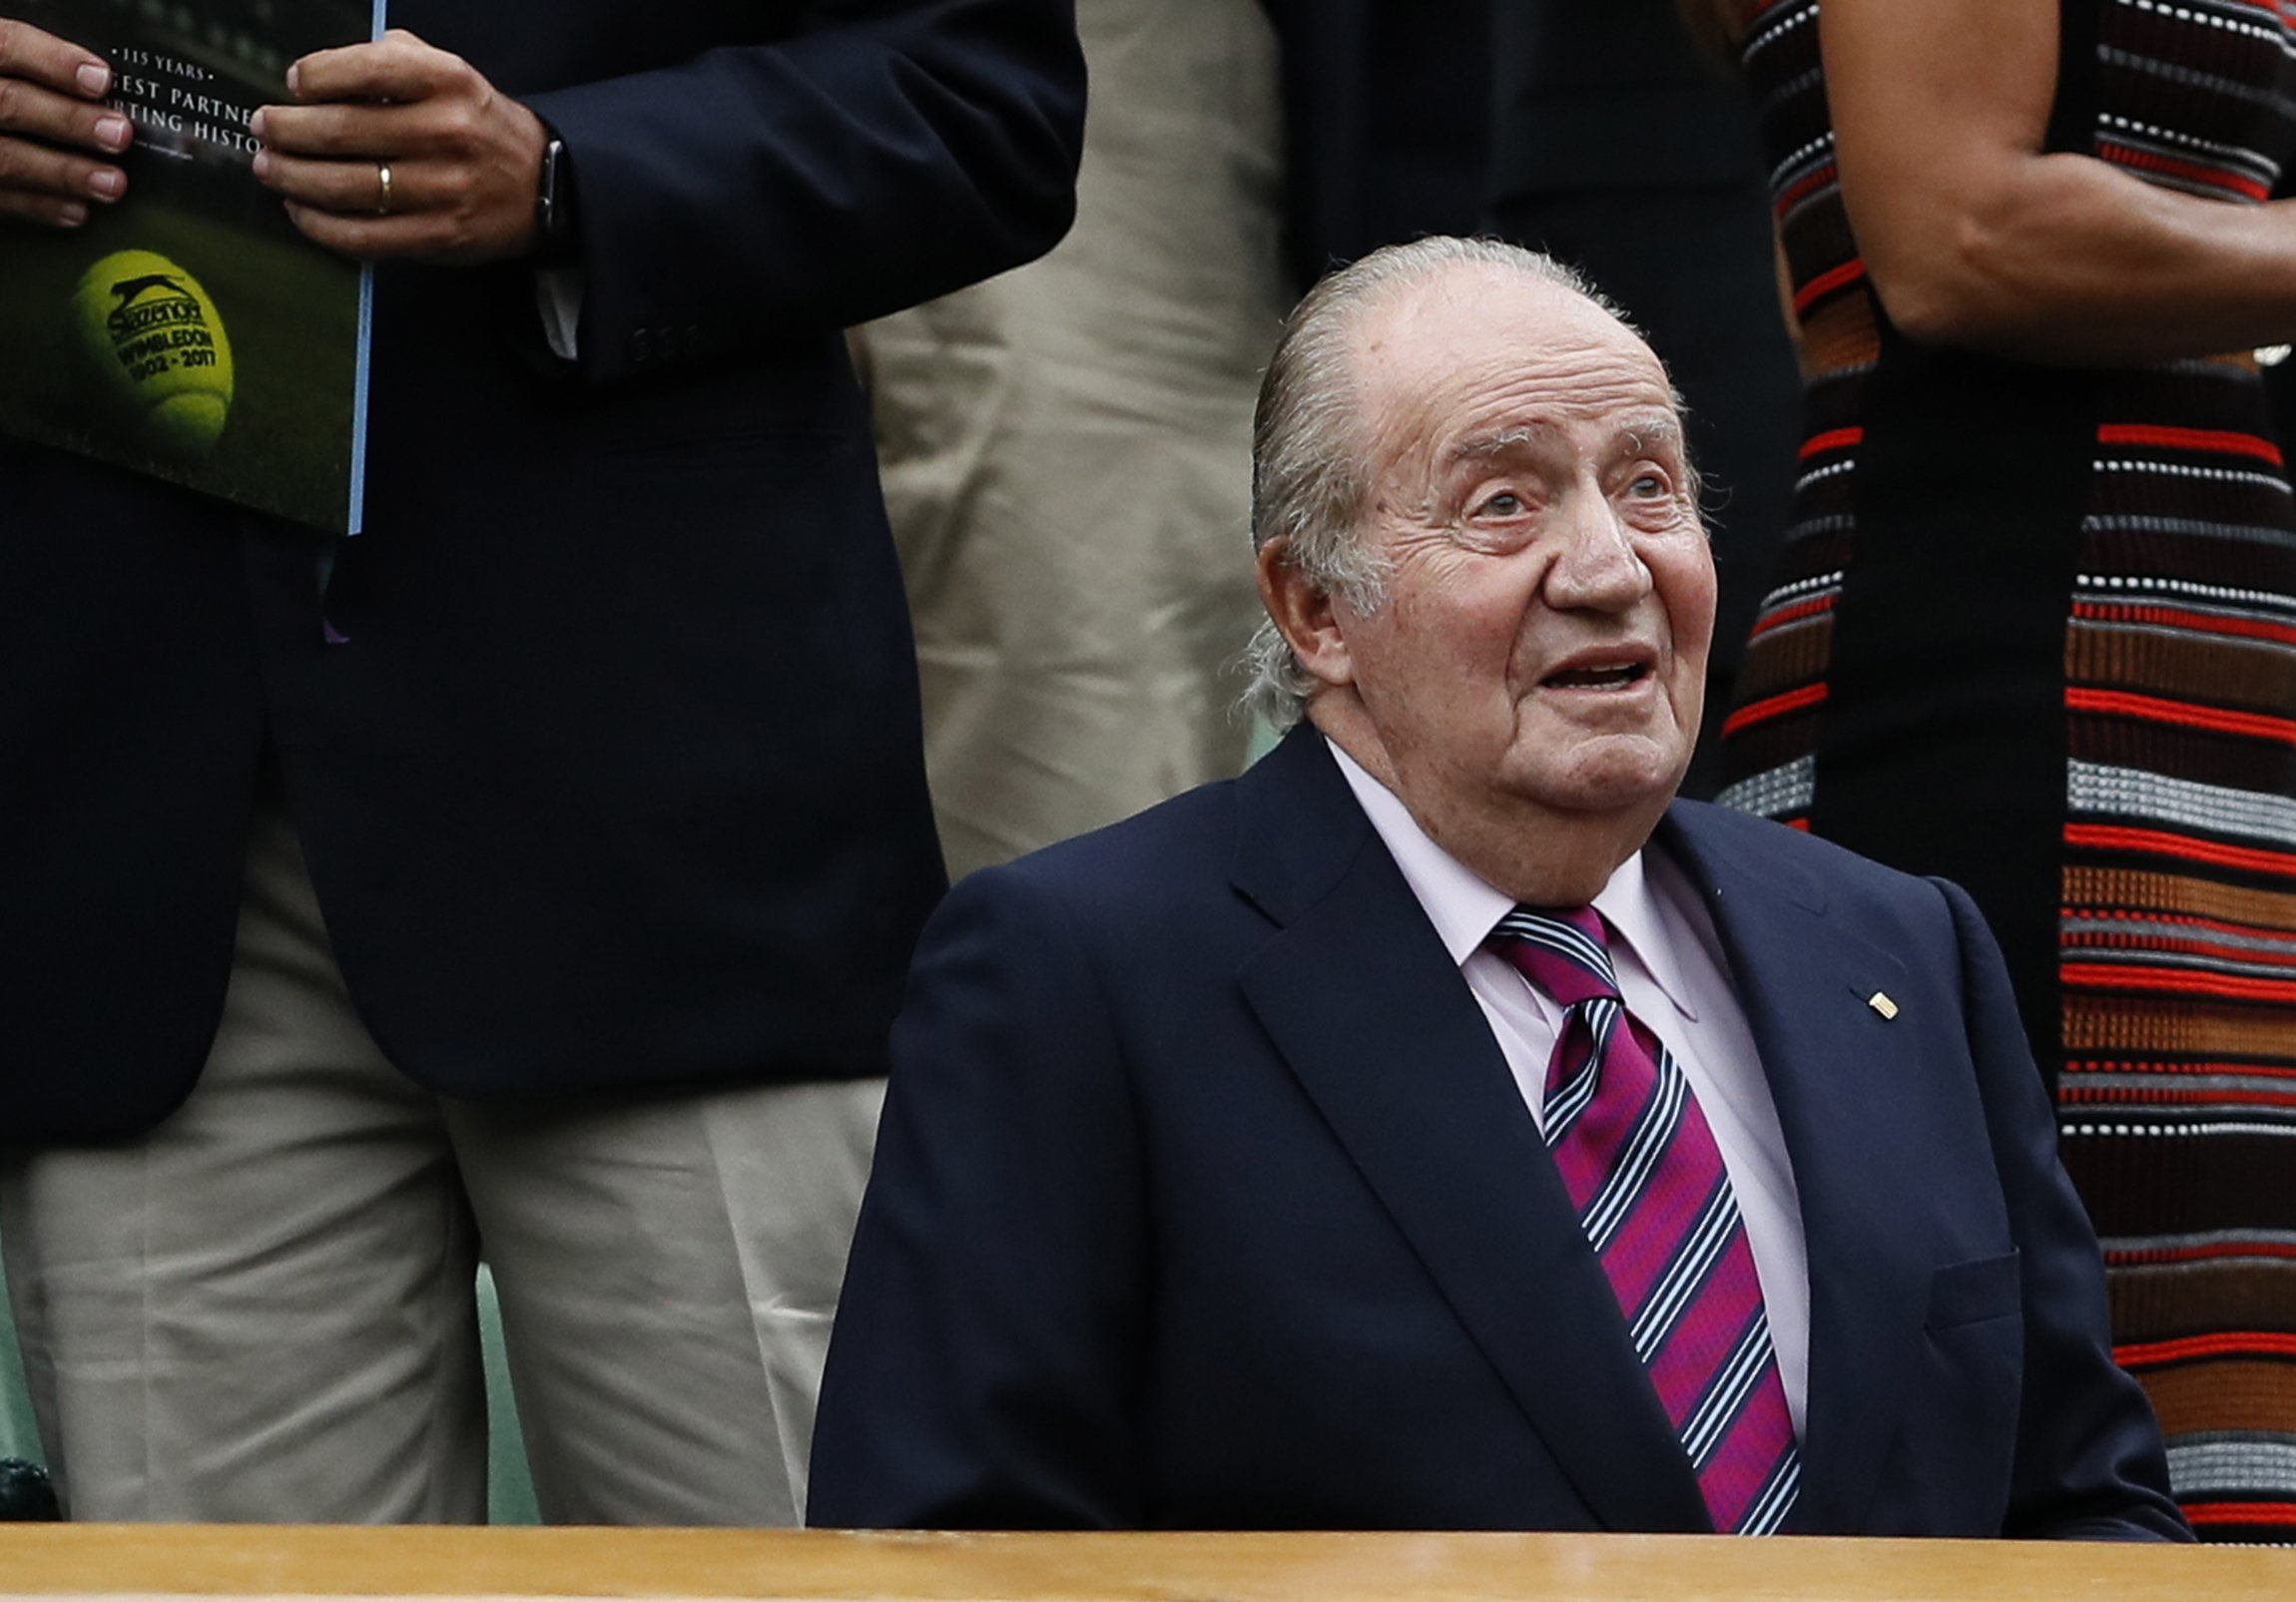 La cara oculta de Juan Carlos: "maleducado, banal, iletrado, se cree superior"